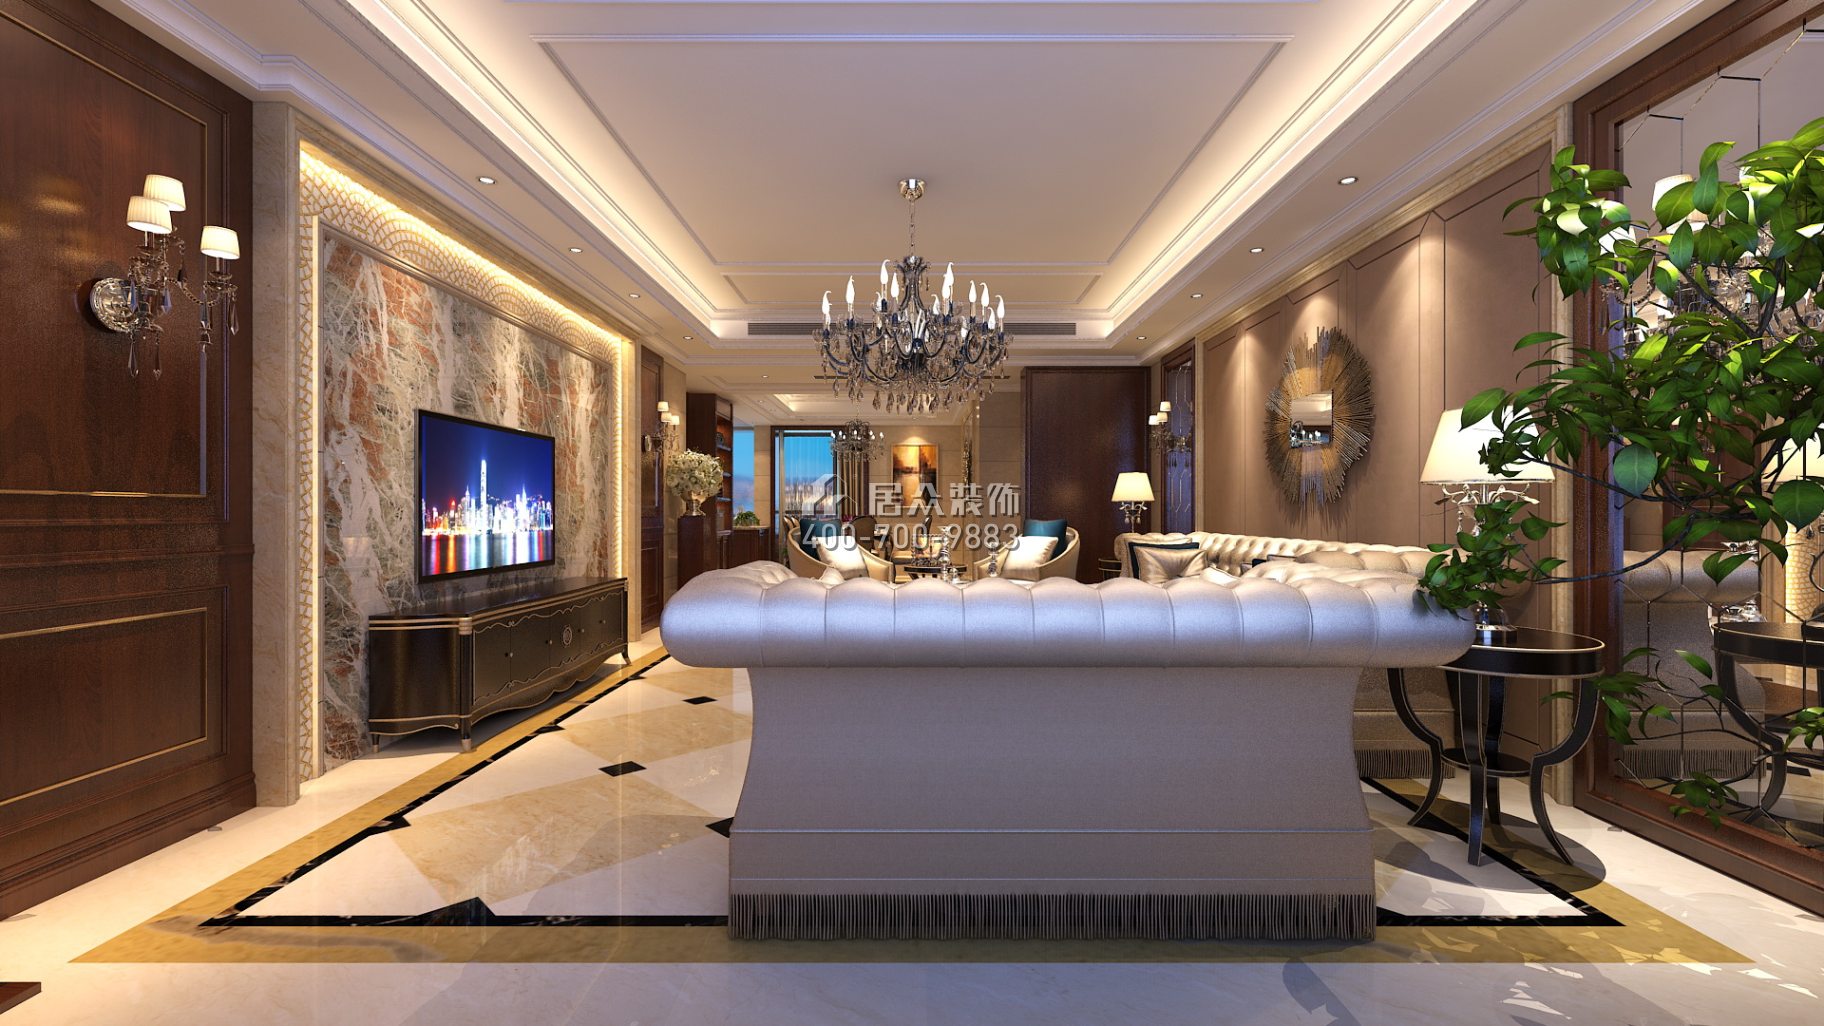 紫御华庭148平方米美式风格平层户型客厅装修效果图